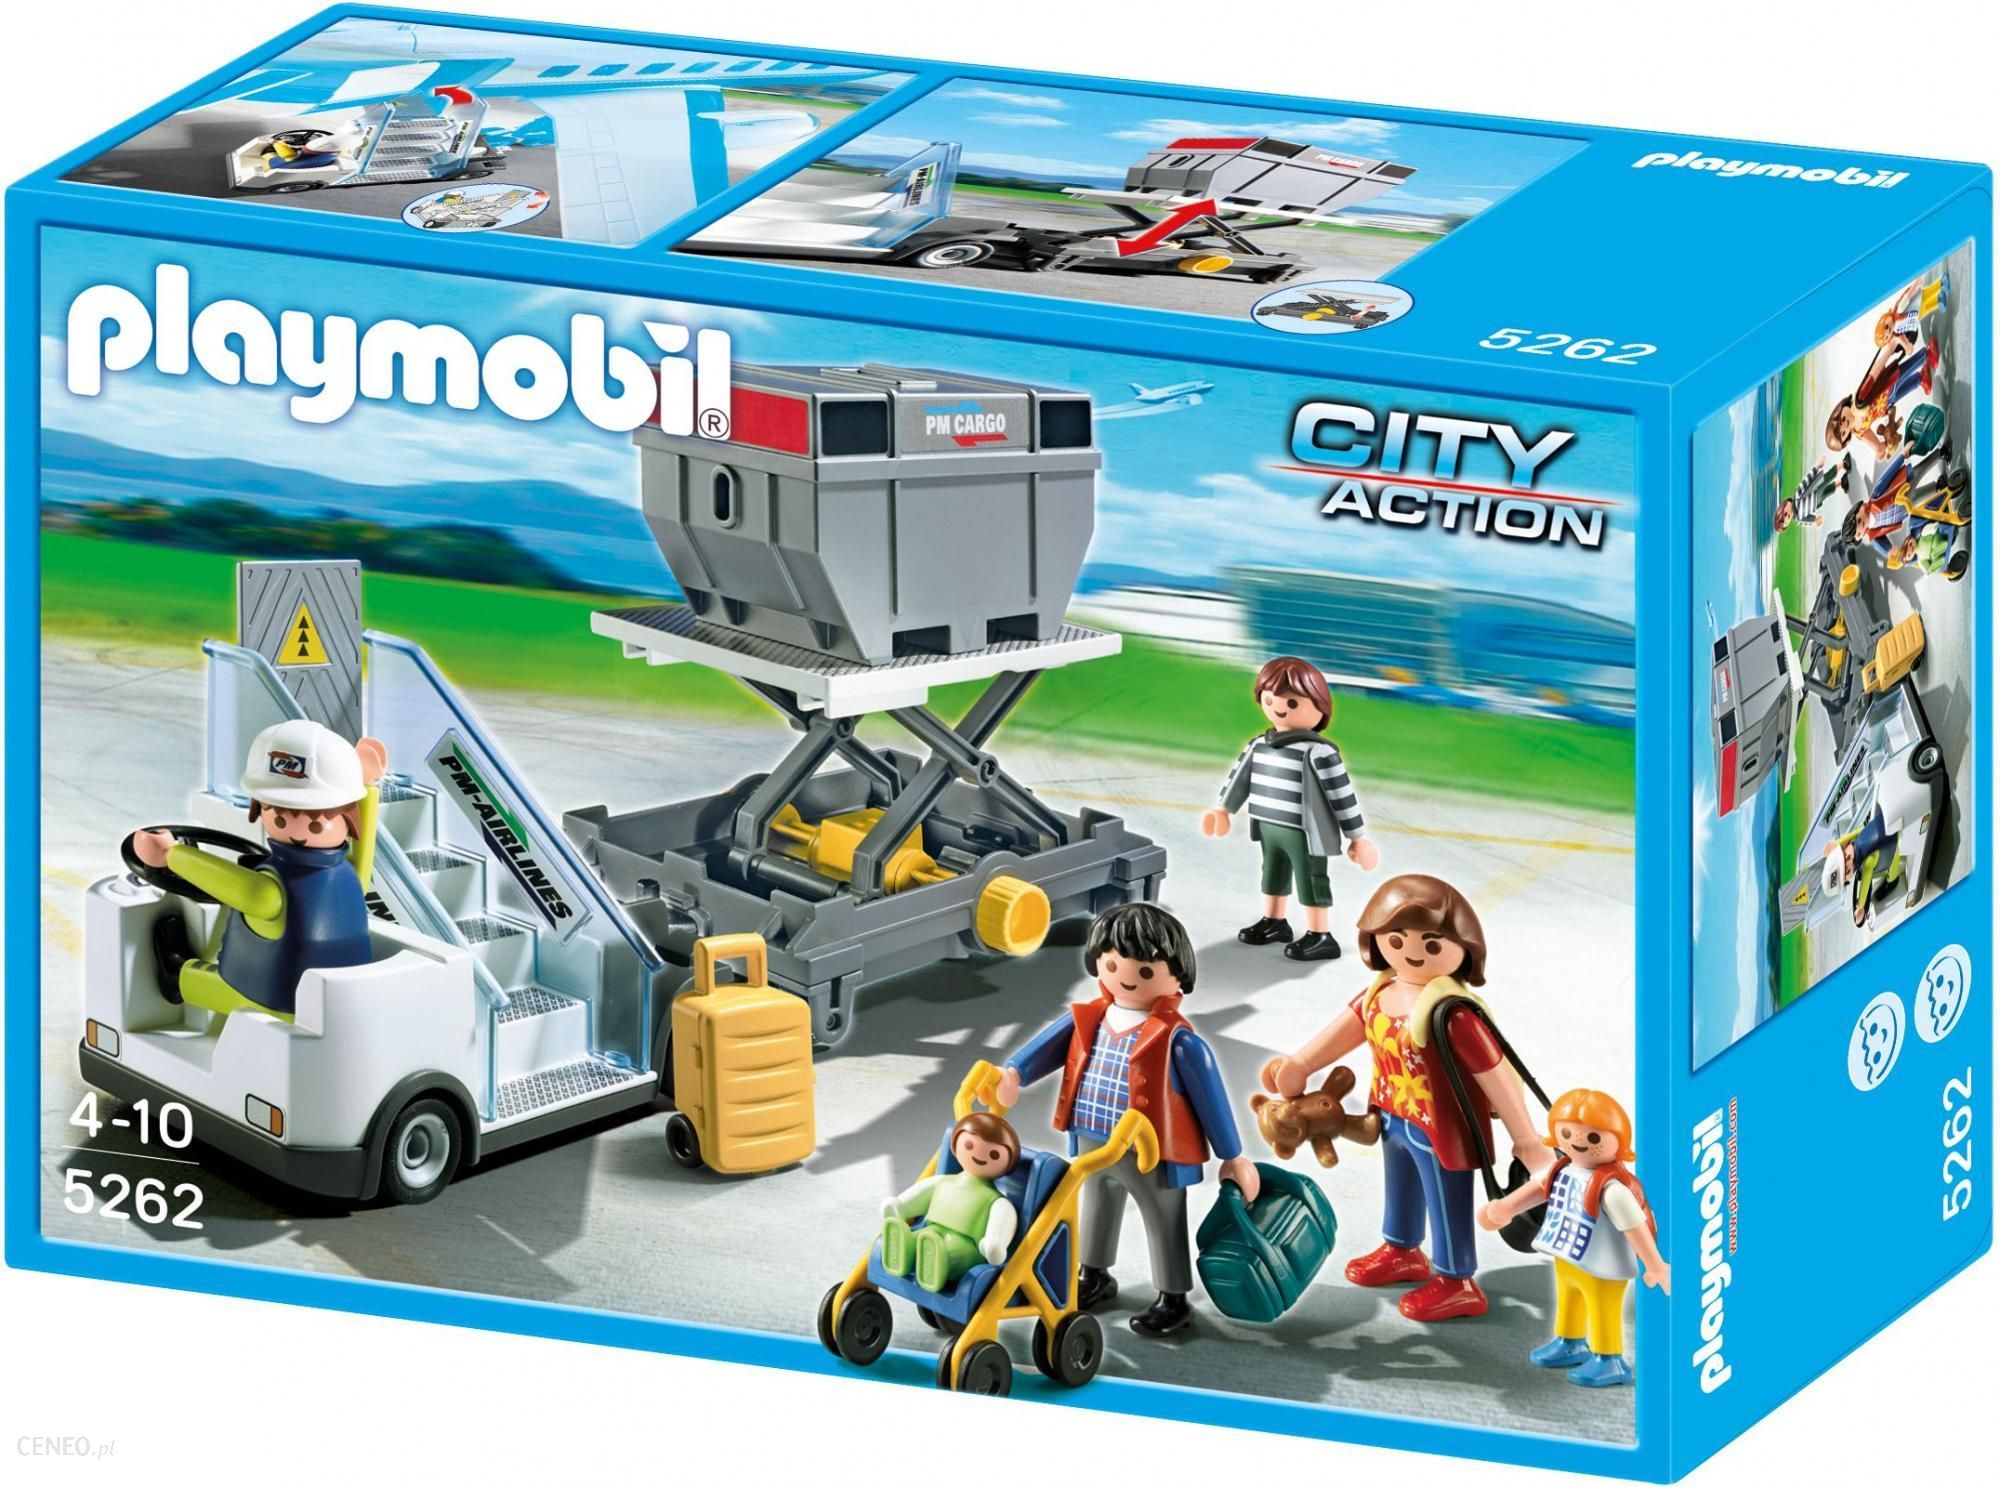 Playmobil Schody z Przyczepą Cargo 5262 ceny i opinie